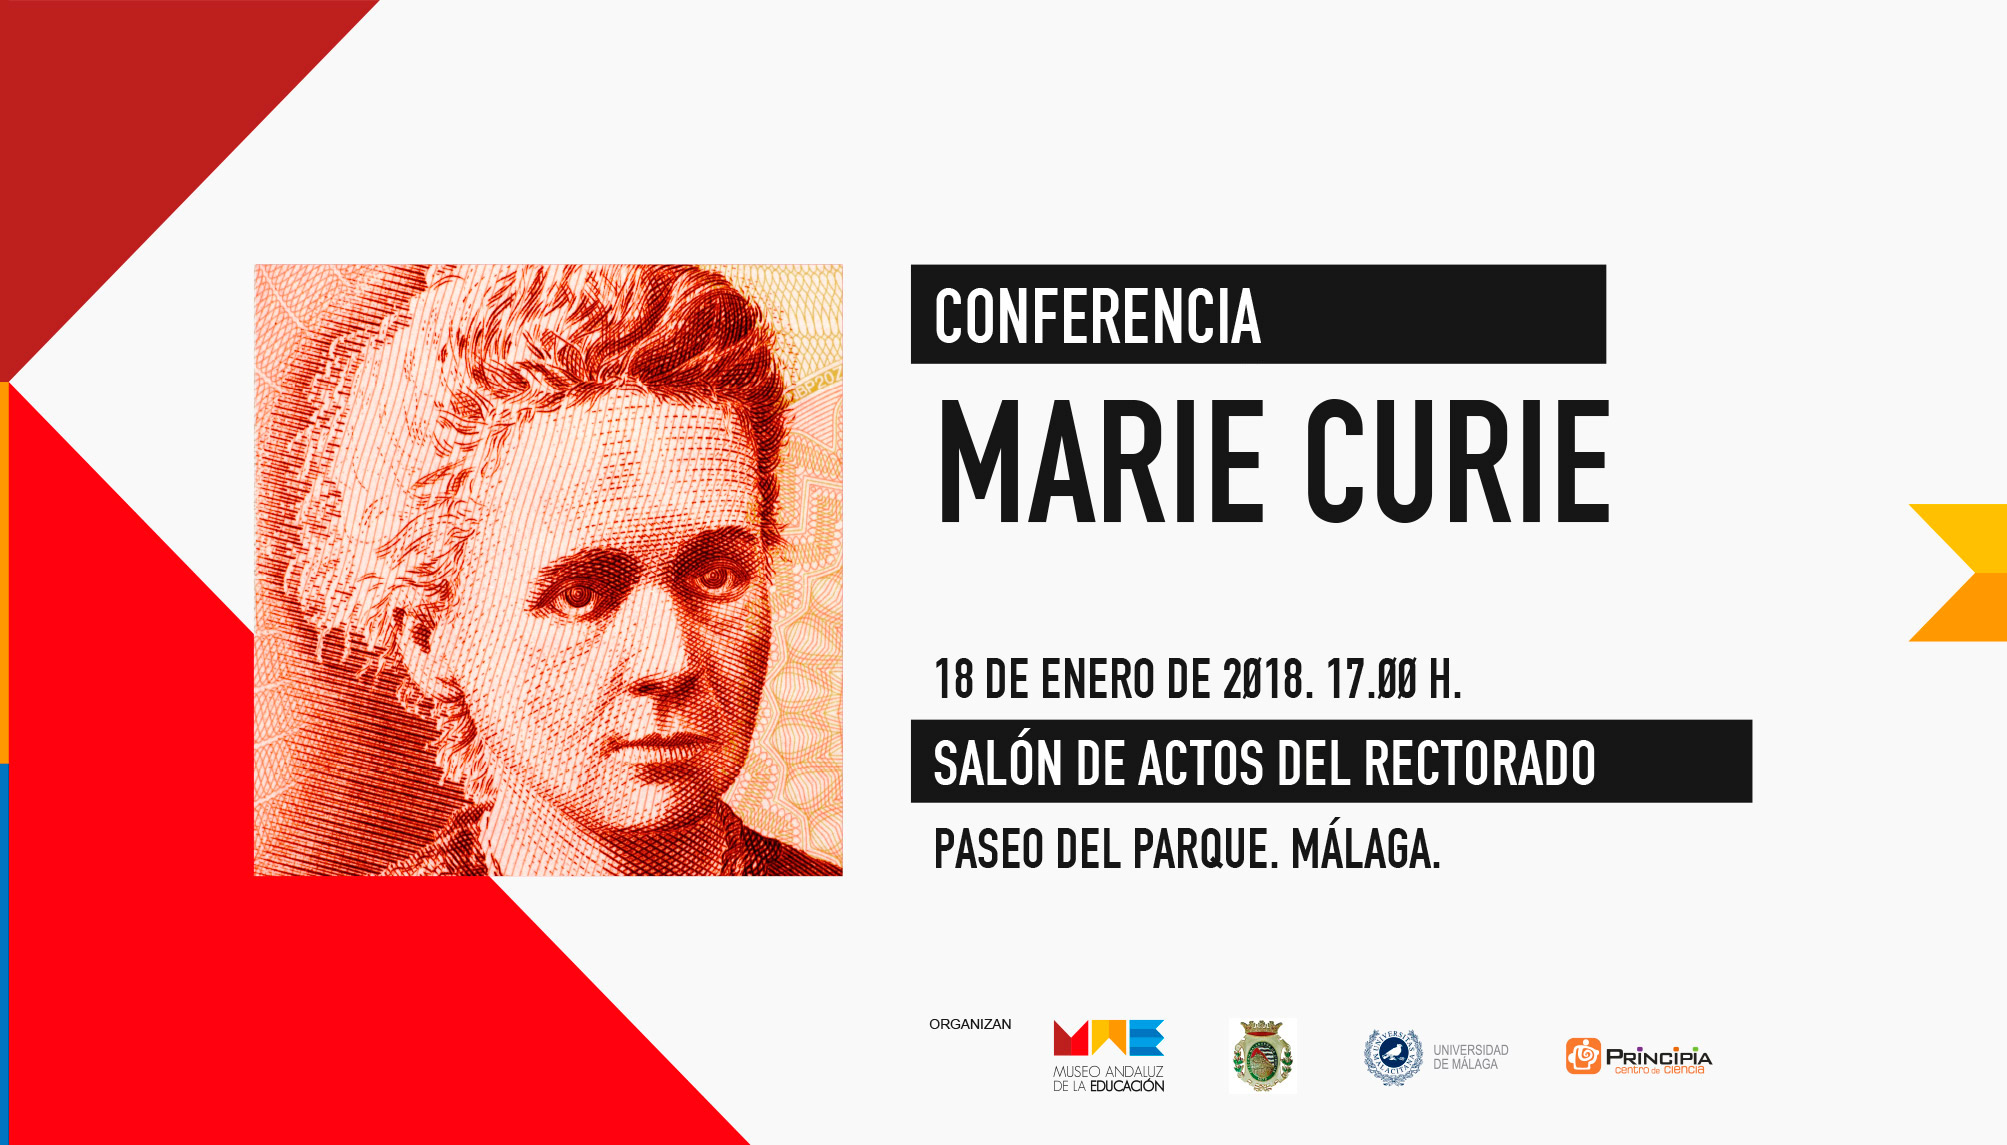 CONFERENCIA MARIE CURIE - 18-01-2018 - Salón de Actos del Rectorado, Paseo del Parque, Málaga